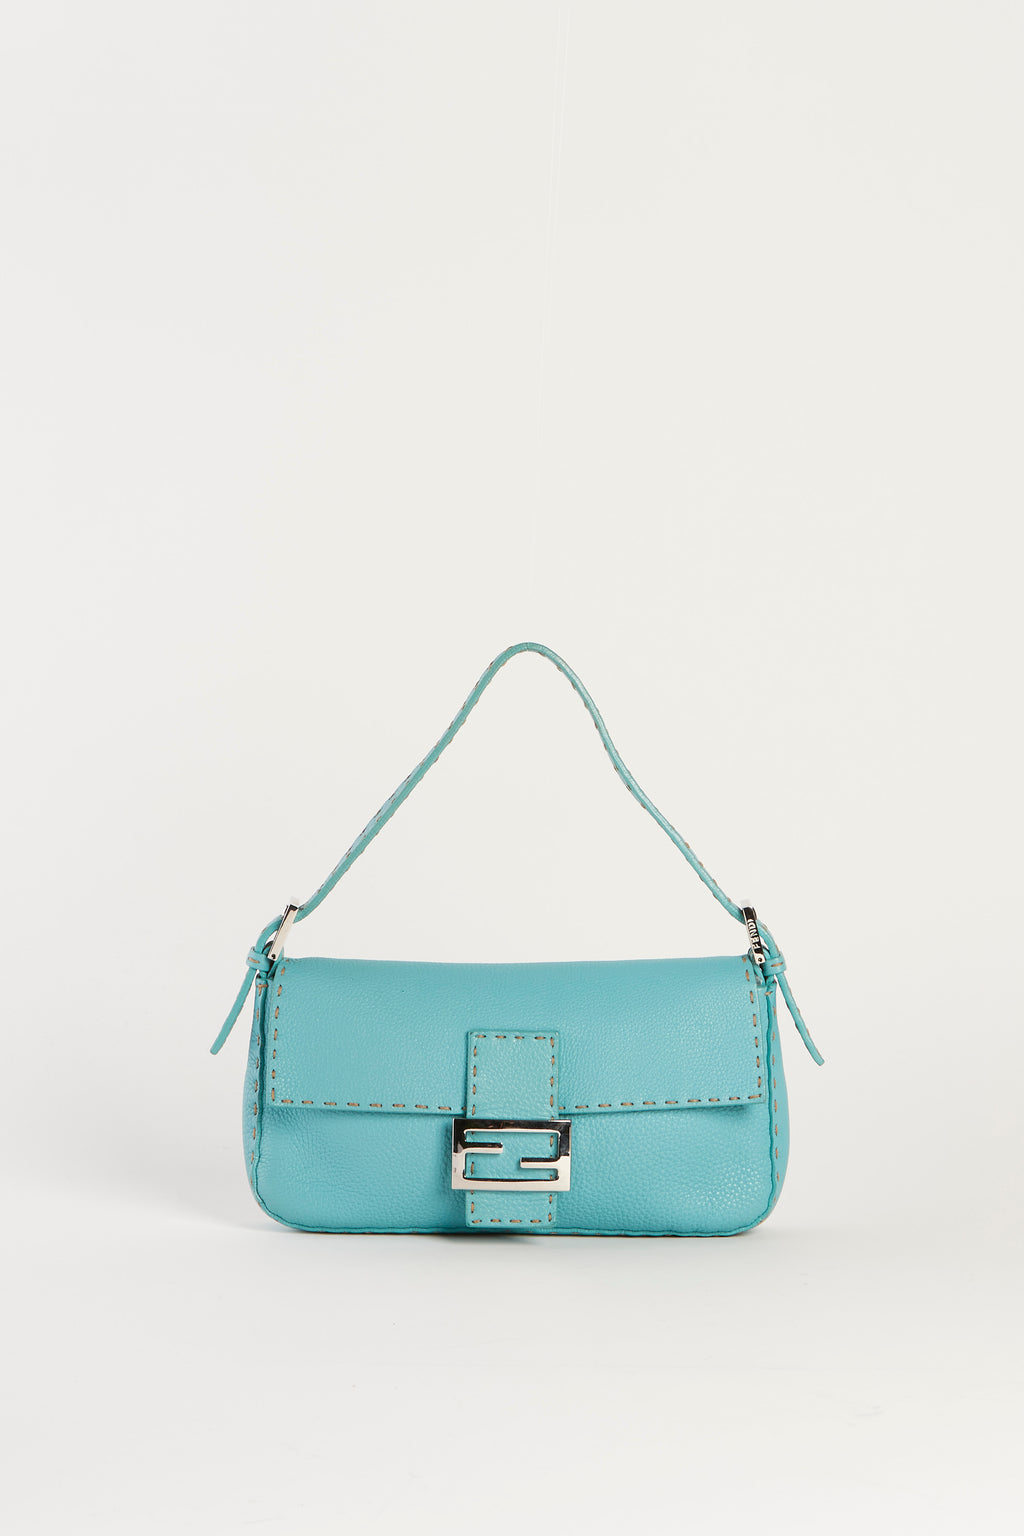 Vintage Fendi Tiffany Blue Leather Baguette Shoulder Bag